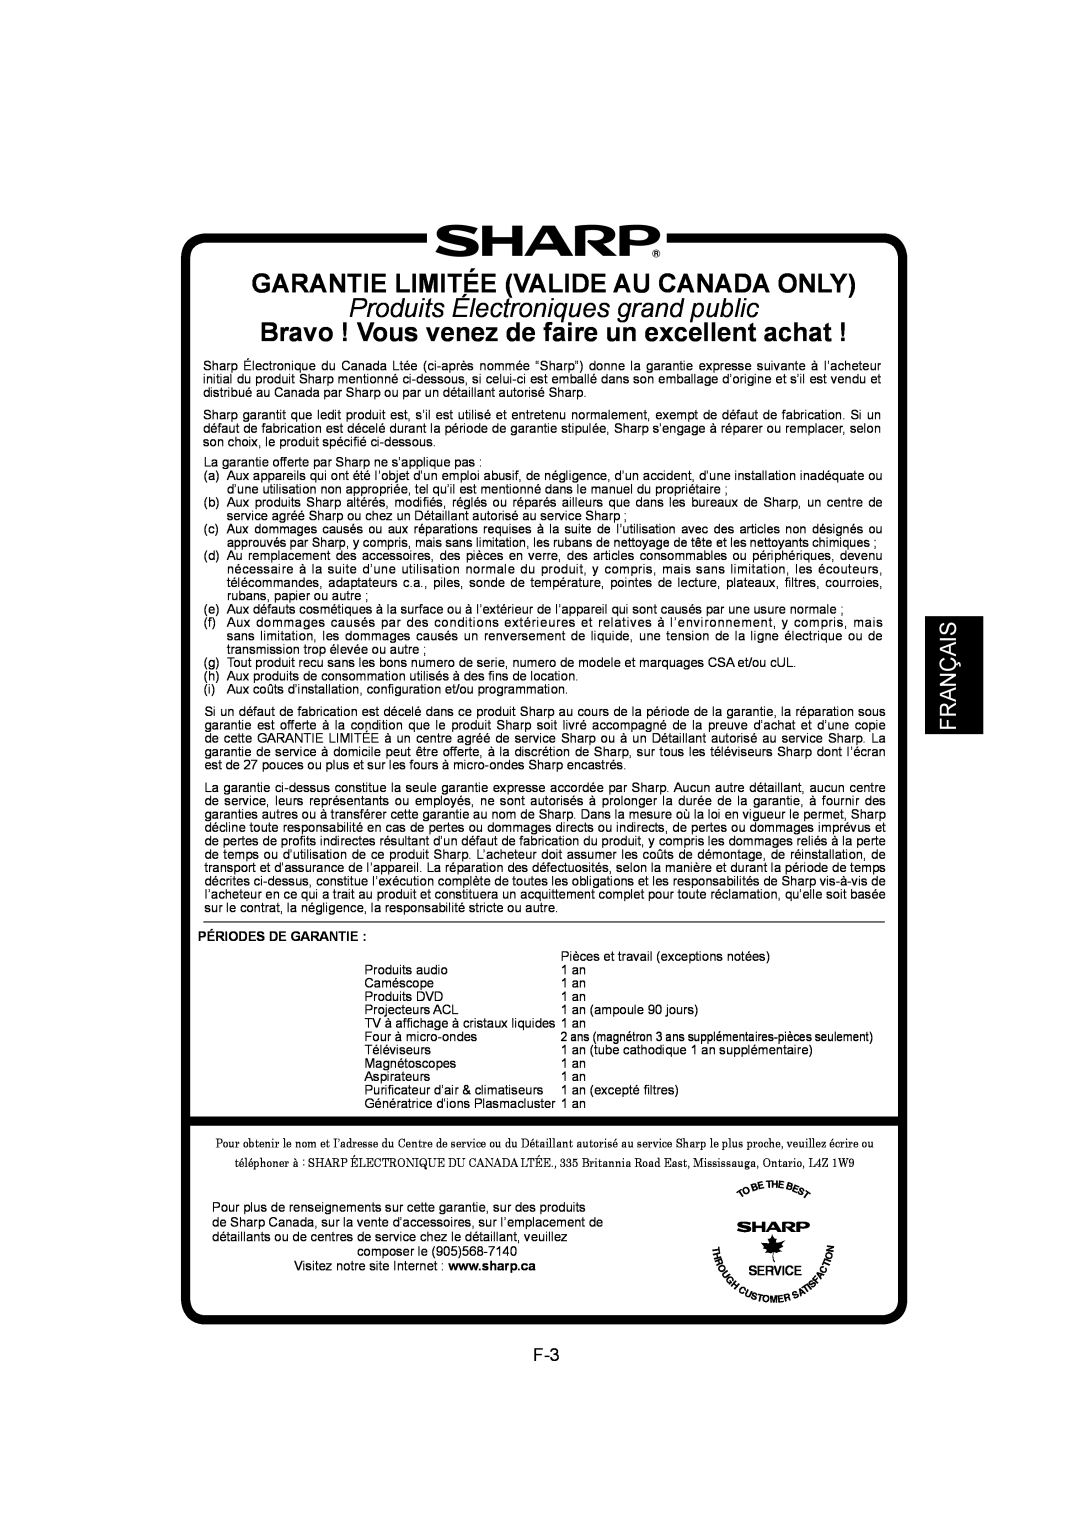 Sharp IG-A40U Garantie Limitée Valide Au Canada Only, Produits Électroniques grand public, Français, Périodes De Garantie 